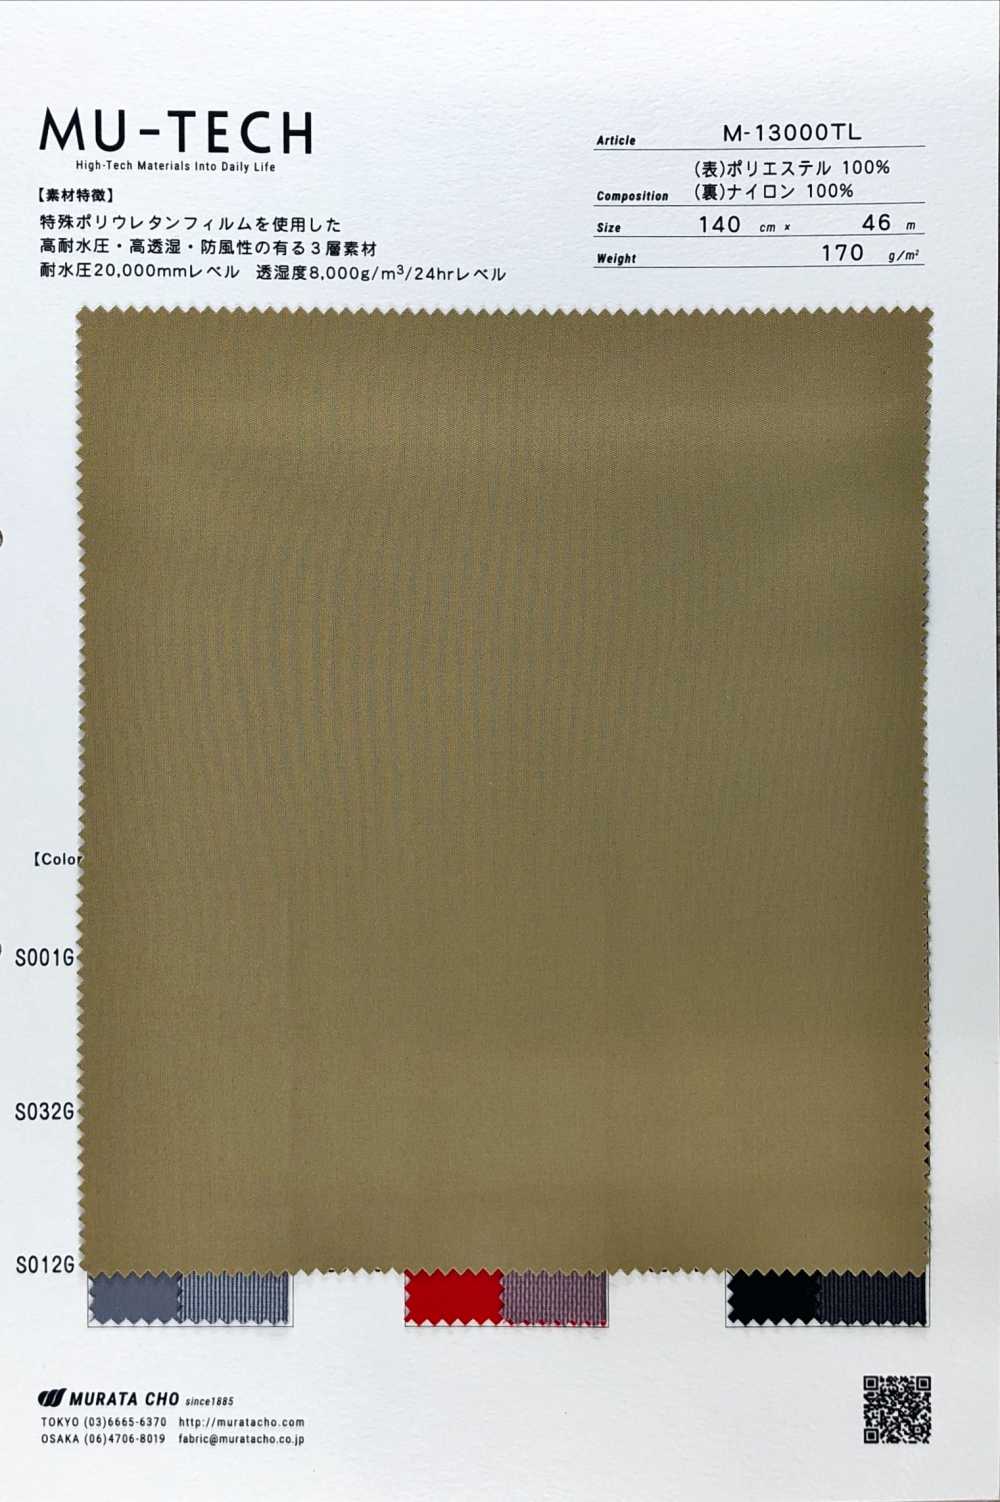 M-13000TL Malha De Poliéster De 3 Camadas De Alto Desempenho[Têxtil / Tecido] Muratacho